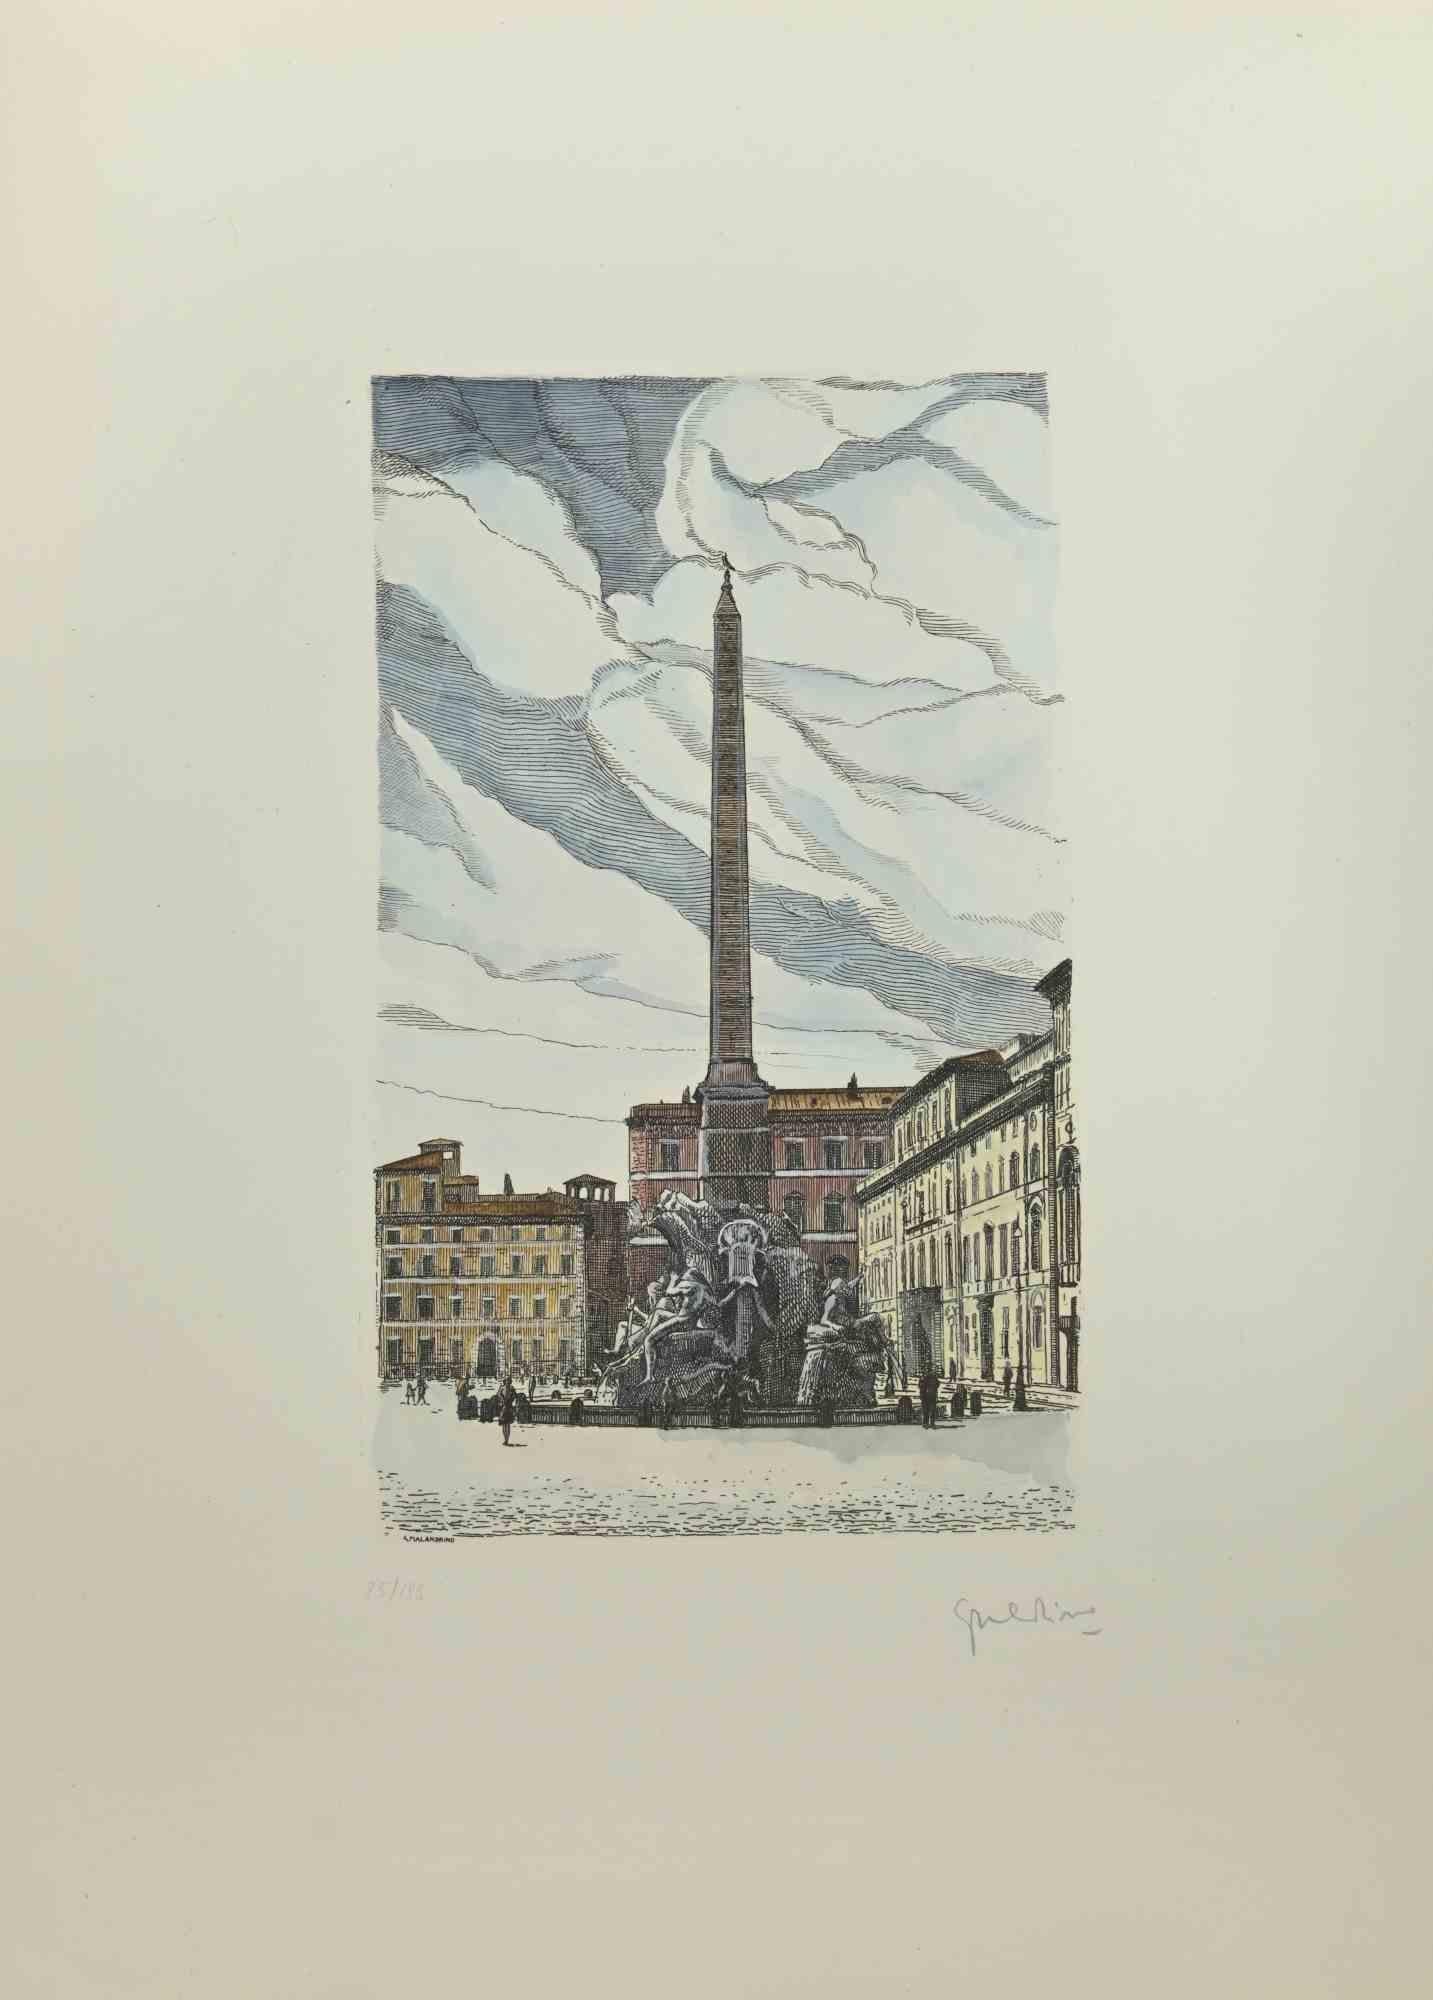 Navona Square - Rom ist ein Kunstwerk, das von  Giuseppe Malandrino .

Druck in Ätztechnik.

Handsigniert  des Künstlers mit Bleistift in der rechten unteren Ecke. In der linken unteren Ecke nummeriert. Ausgabe 25/199.

Gute Bedingungen. 

Dieses